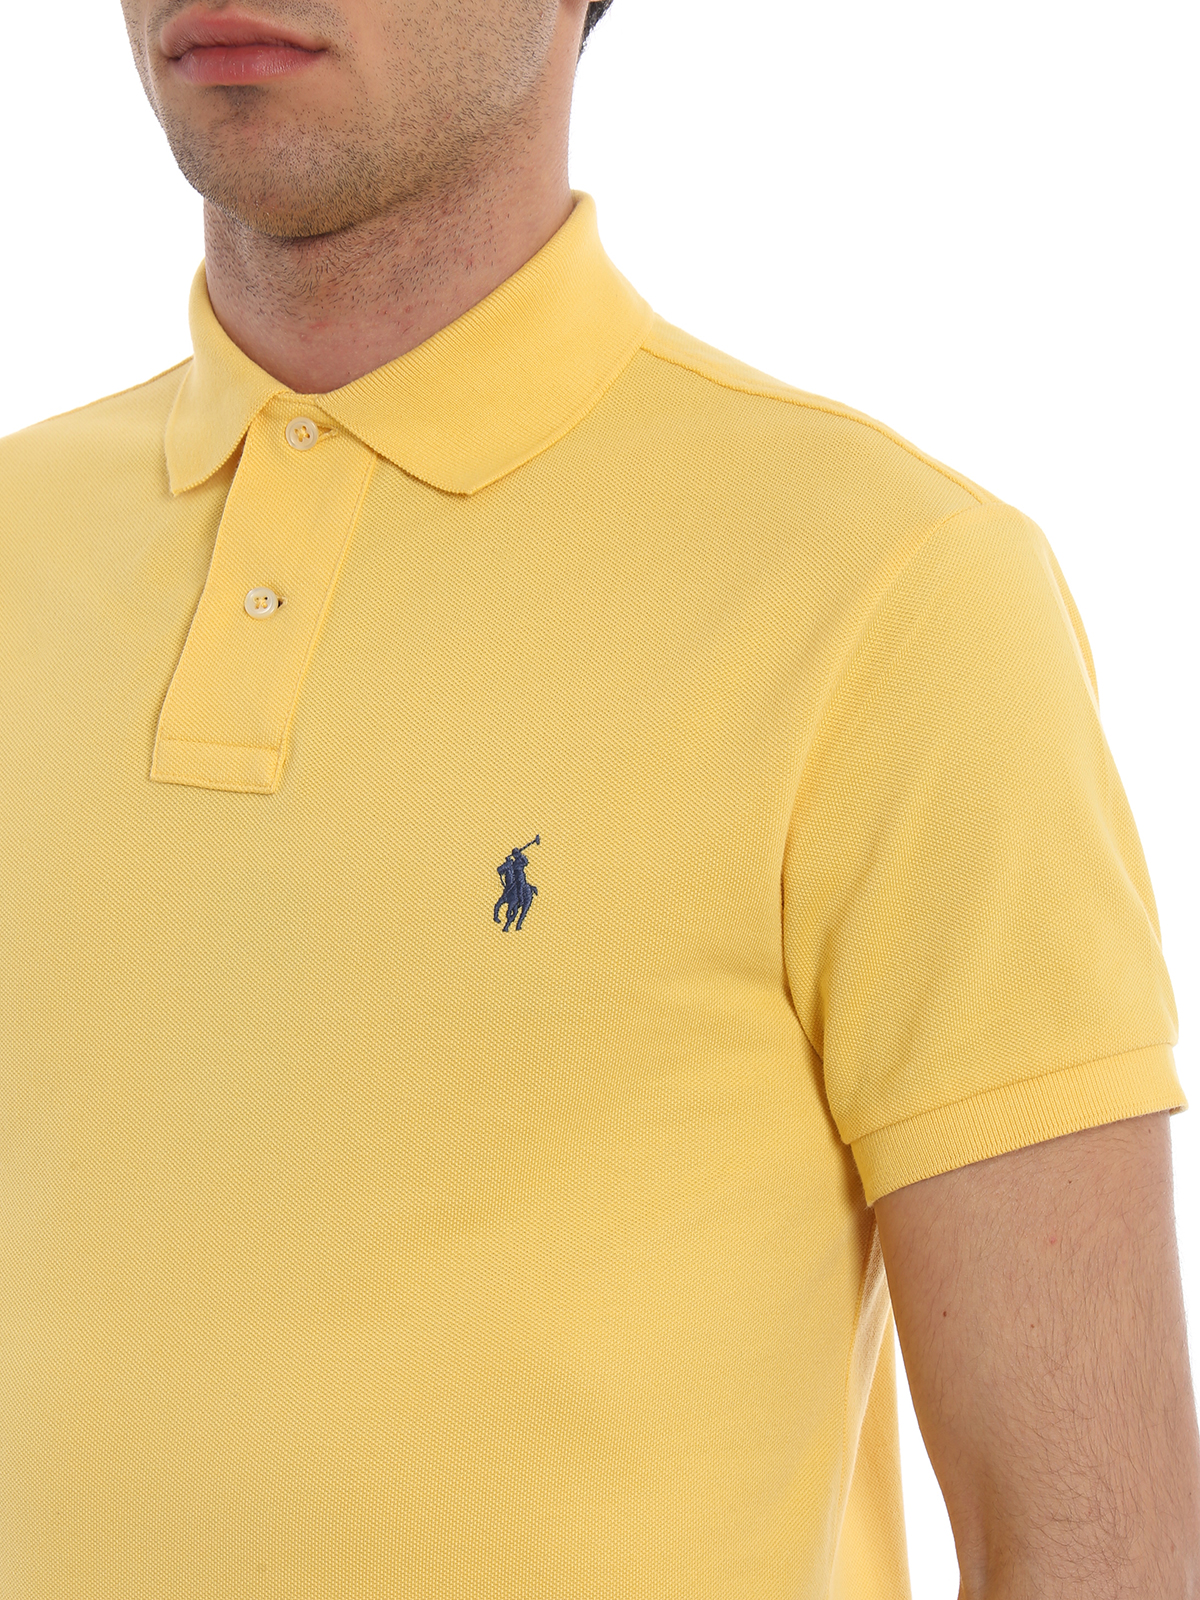 yellow polo shirt ralph lauren